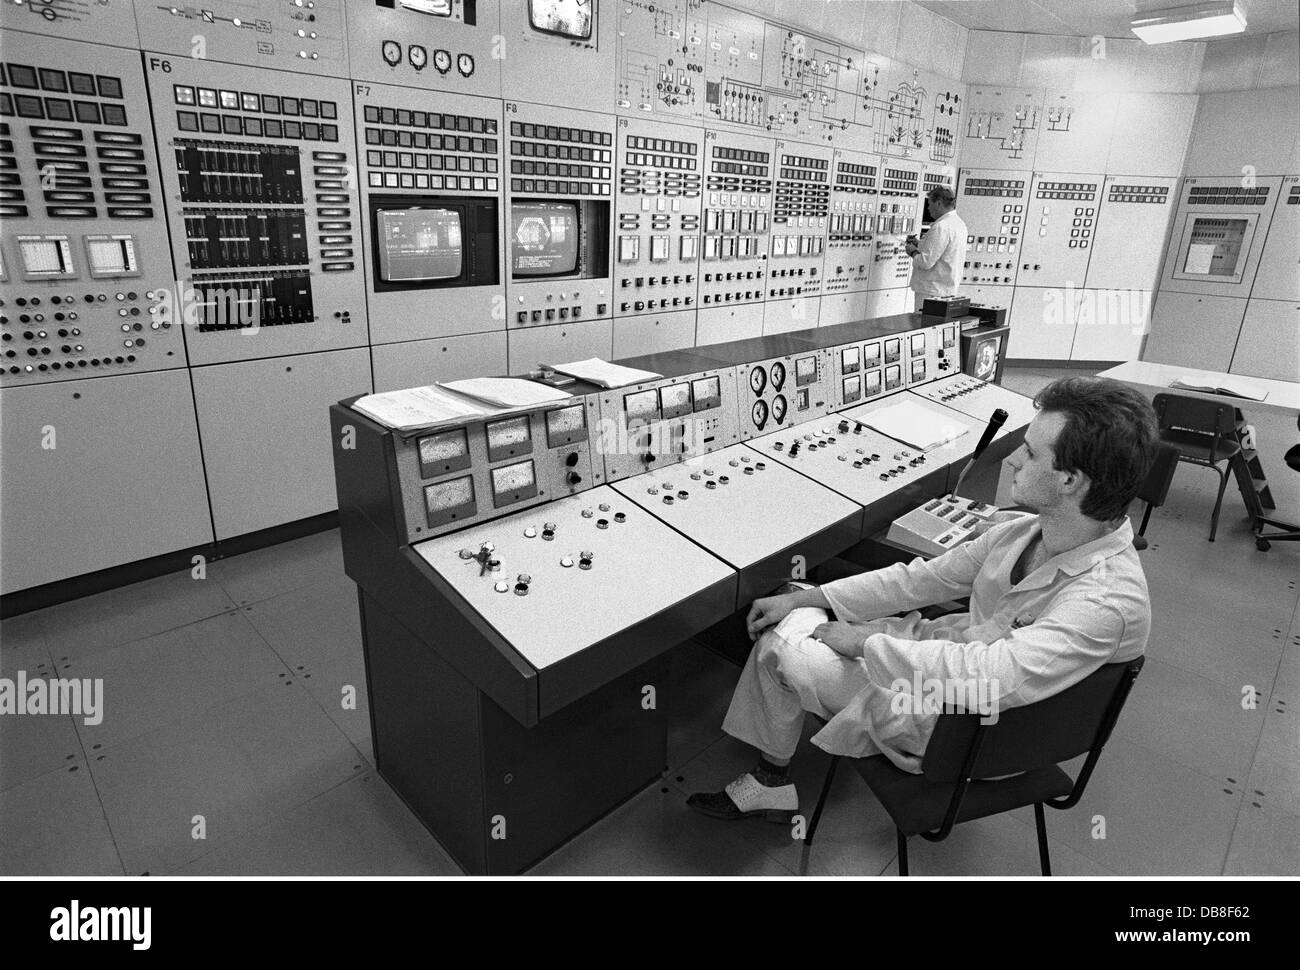 Energie, Kernenergie, Nervenzentrum des Forschungsreaktors vom Typ WWR-S, im Kernforschungszentrum, betrieben vom Zentralinstitut für Kernphysik, in Betrieb seit 1957, russischer Bauart, Leistung 10 MW, abgeschaltet im Juni 1991, Rossendorf bei Dresden, Ostdeutschland, 30.5.1990, Zusatz-Rechteklärung-nicht vorhanden Stockfoto